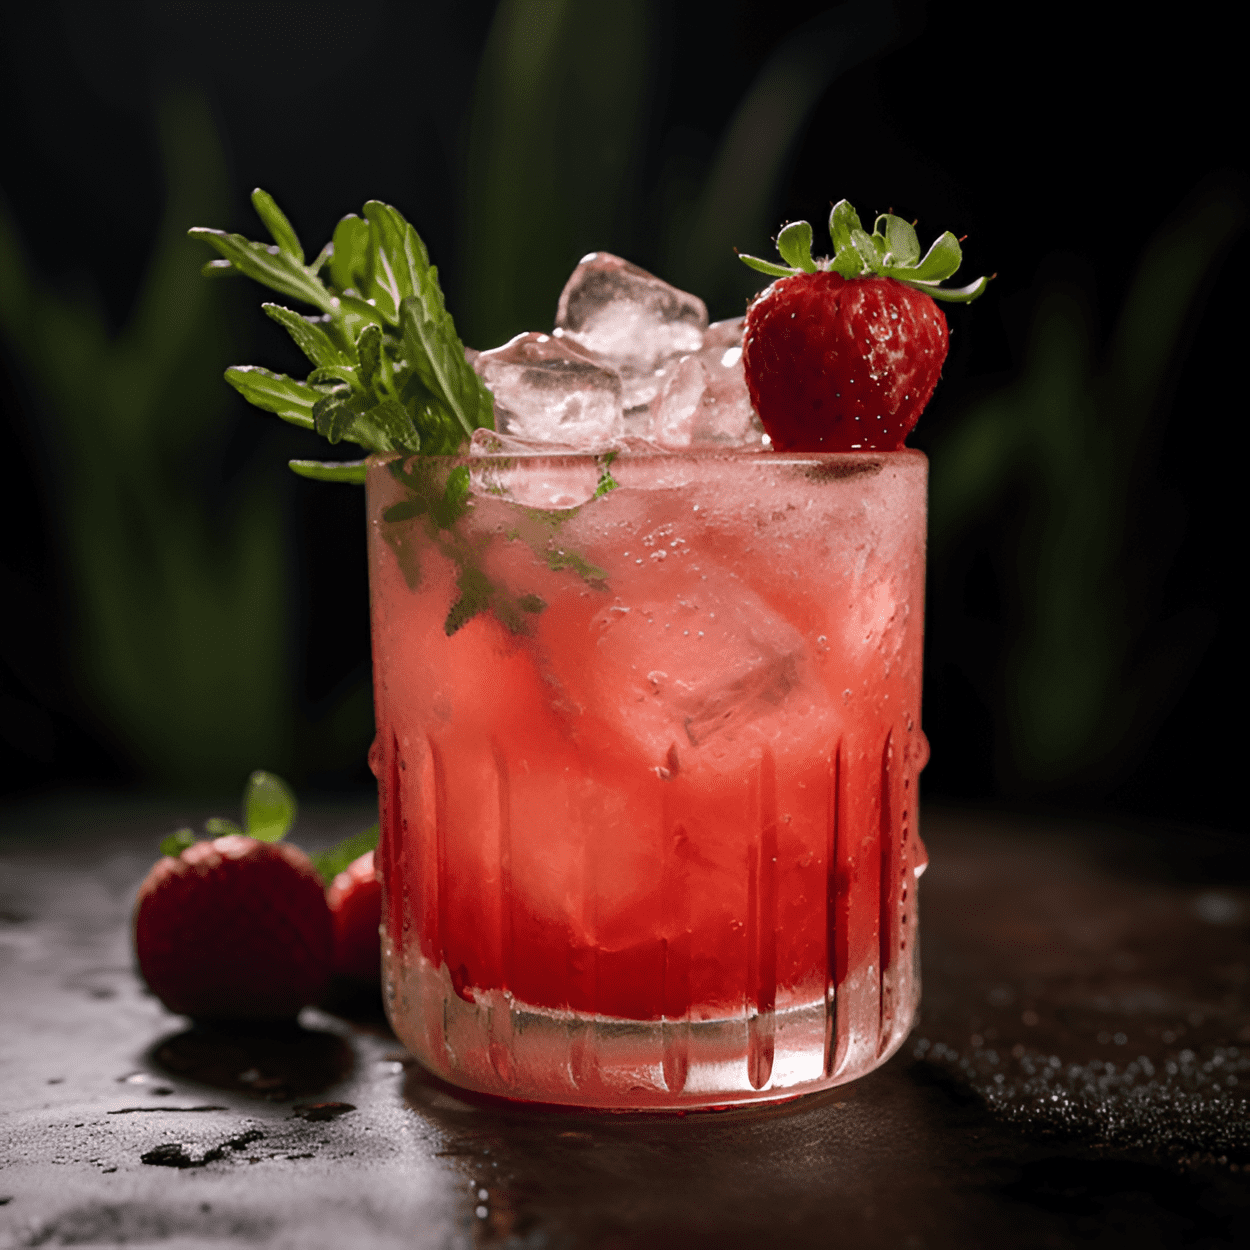 Strawberry-Thyme Bramble Cóctel Receta - El Strawberry-Thyme Bramble es un cóctel bellamente equilibrado. La dulzura de las fresas se combina perfectamente con la acidez del limón, mientras que el tomillo añade una sutil nota terrosa. La ginebra proporciona una base fuerte y crujiente, haciendo de este cóctel una bebida refrescante, pero compleja.